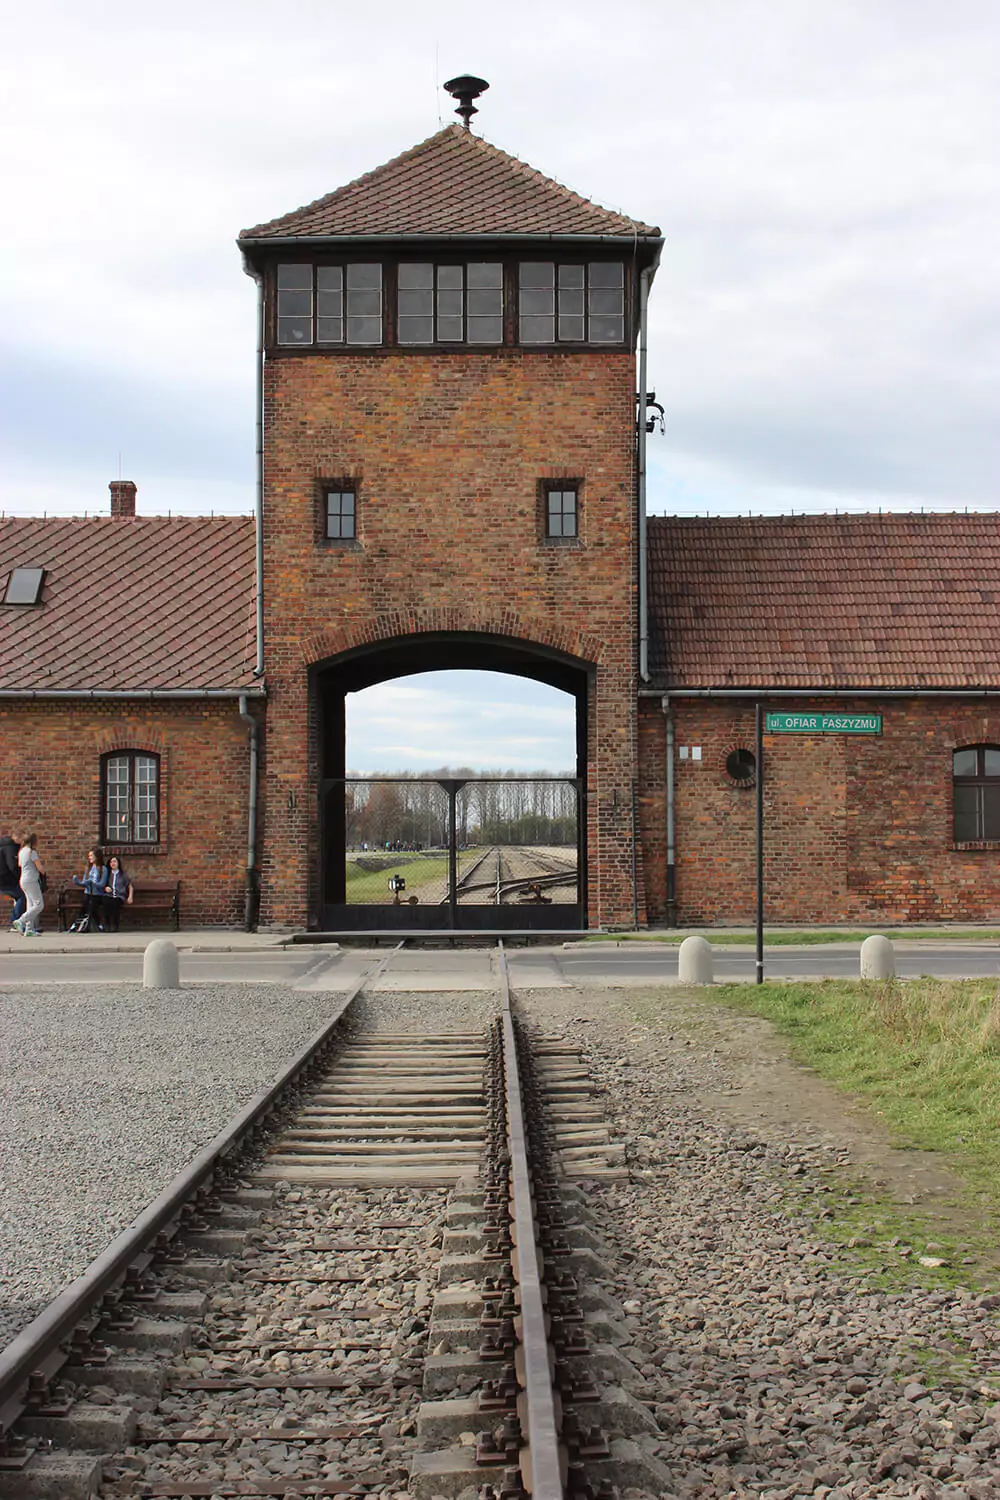 Auschwitz II Birkenau